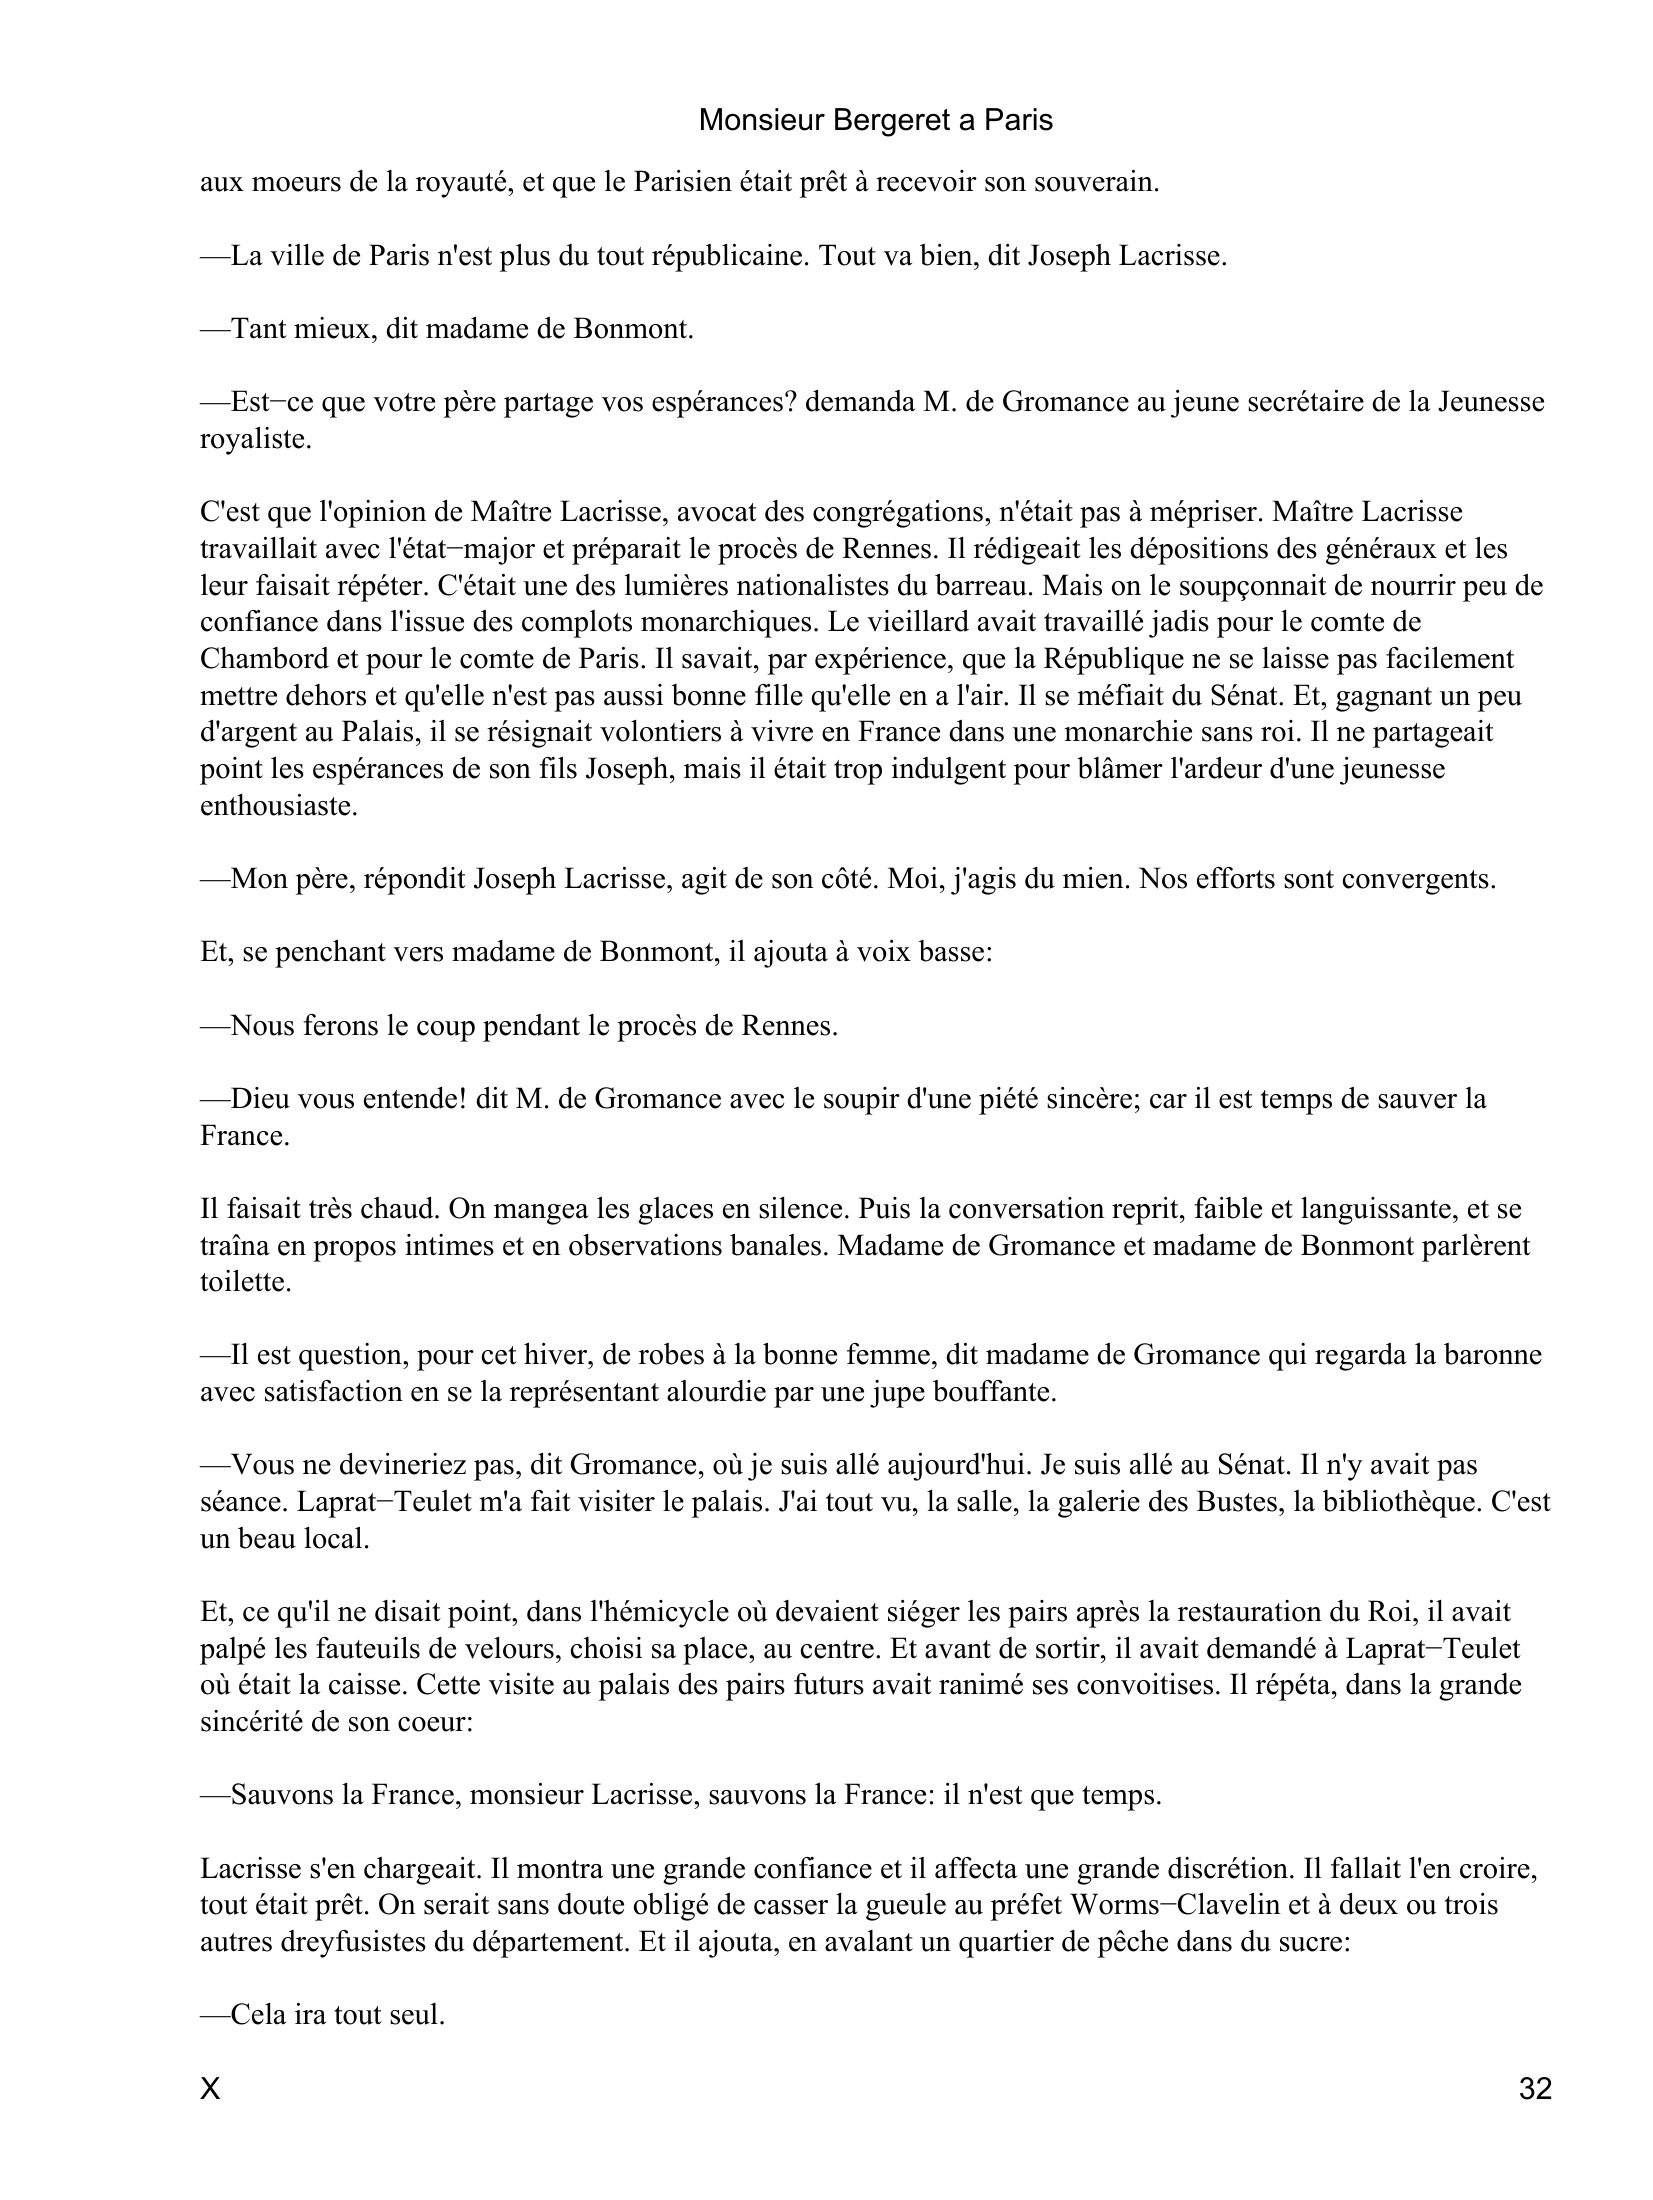 Prévisualisation du document Monsieur Bergeret a Paris
Wallstein, M.